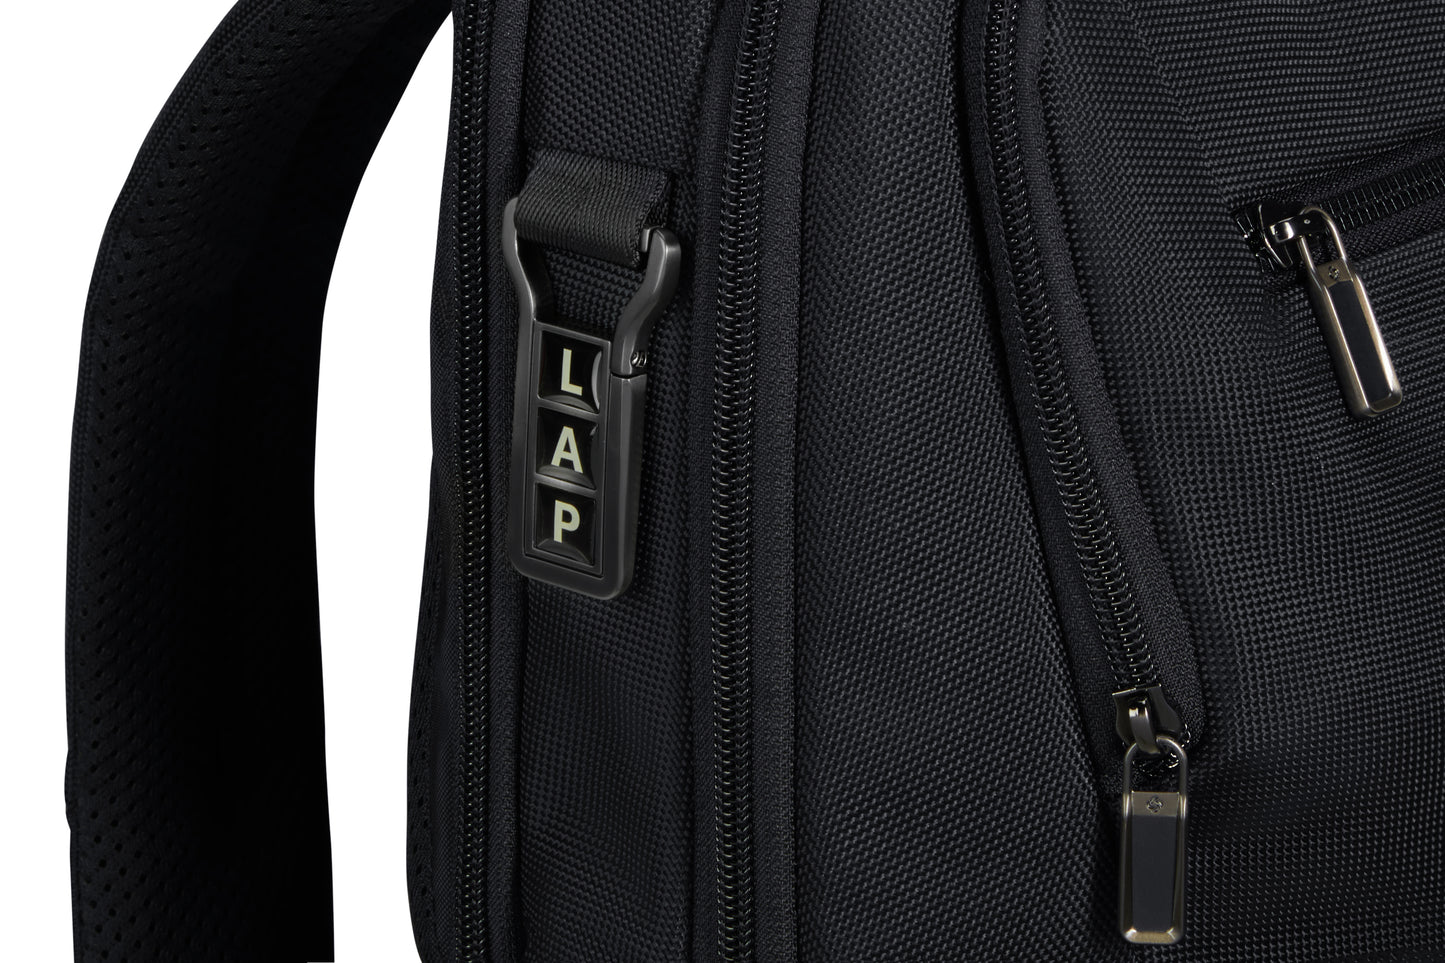 URBAN-EYE   backpack 15.6"  black